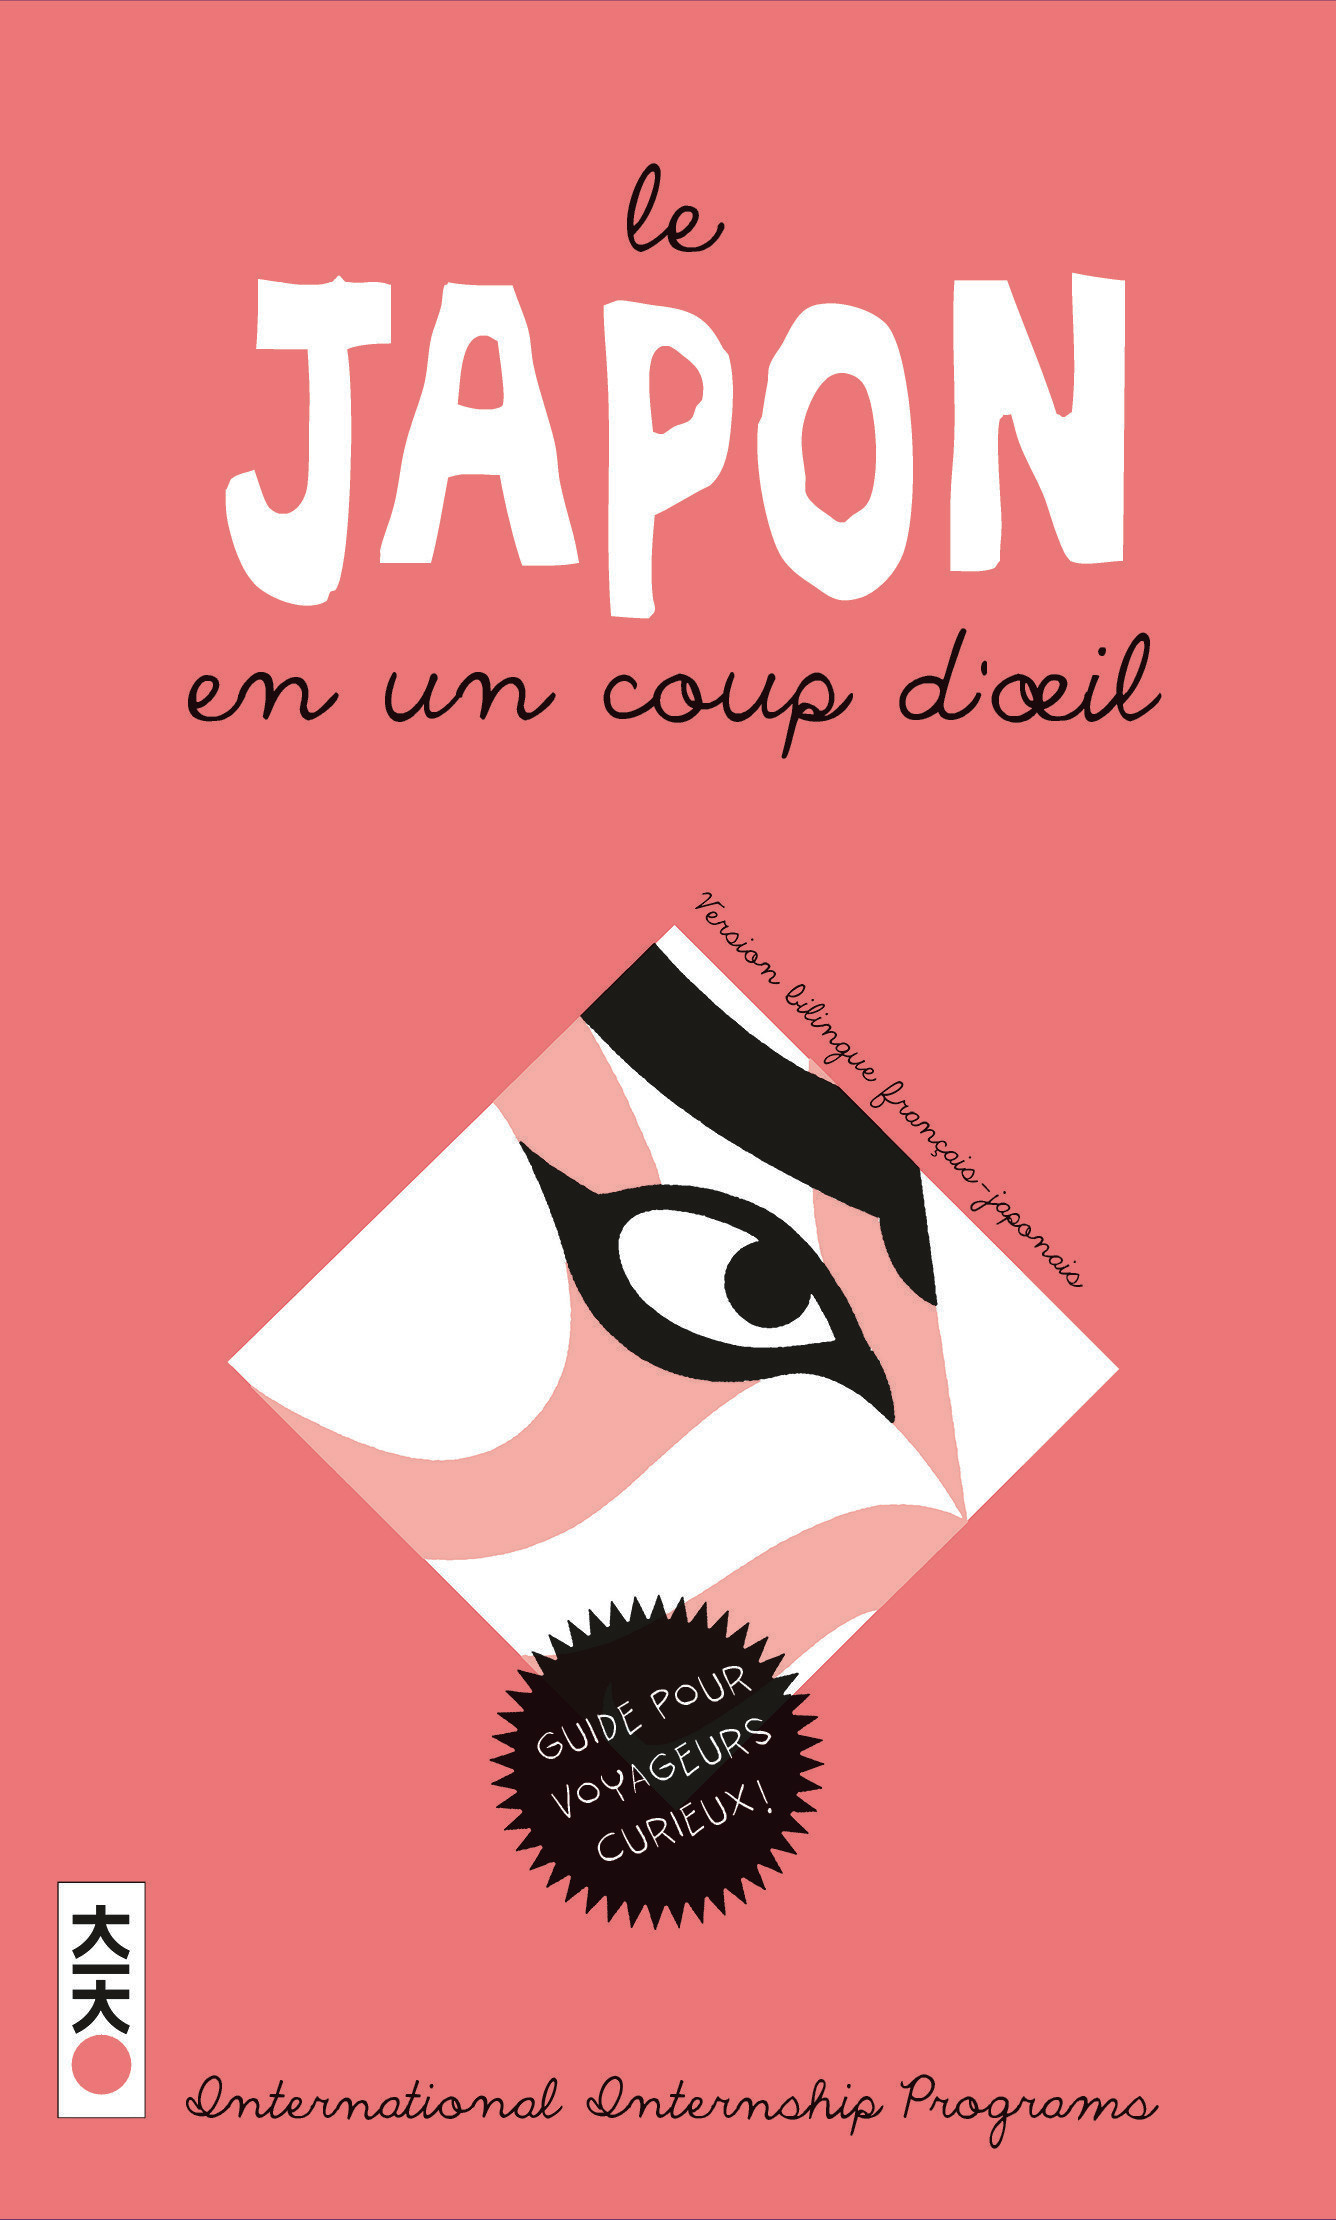 Le Japon En Un Coup D'Oeil